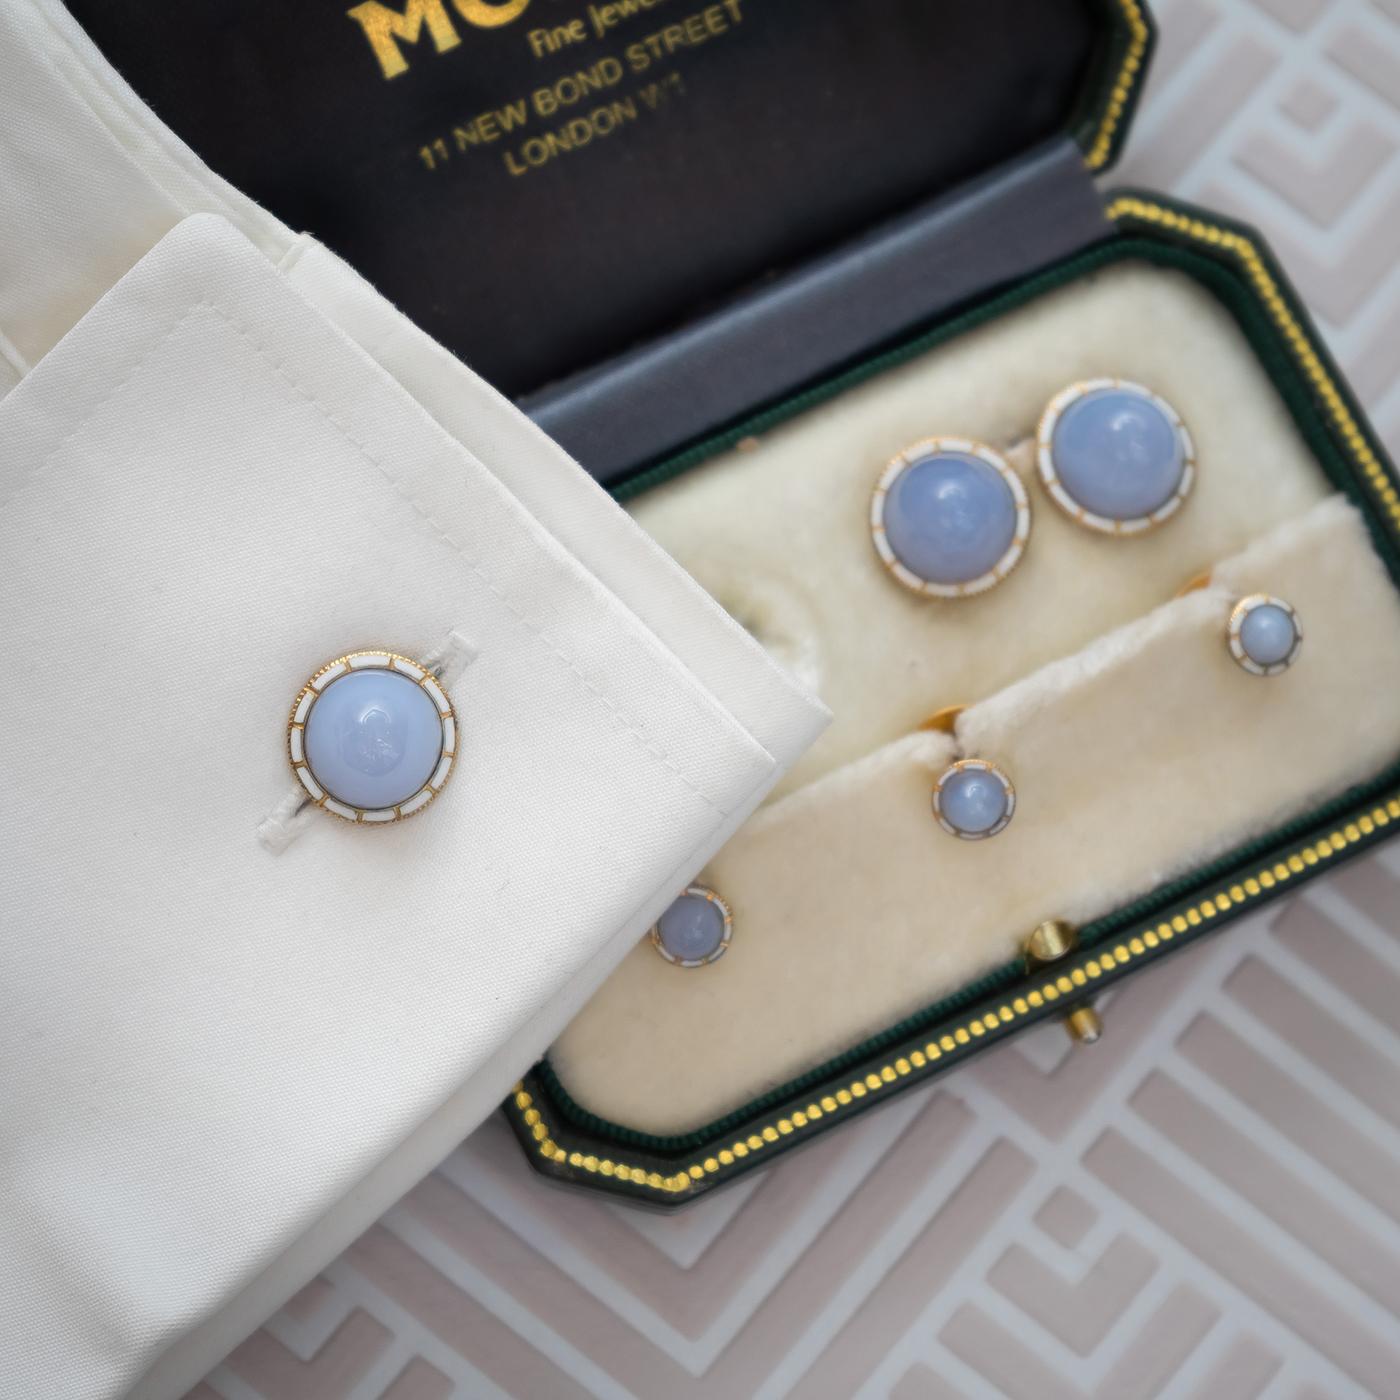 Ensemble vestimentaire anglais, ancien, pour homme, composé d'une paire de boutons de manchette et de trois clous d'oreilles, avec agate bleue en dentelle taillée en cabochon et entourée d'émail blanc, sur or de 15 ct. Circa 1900.